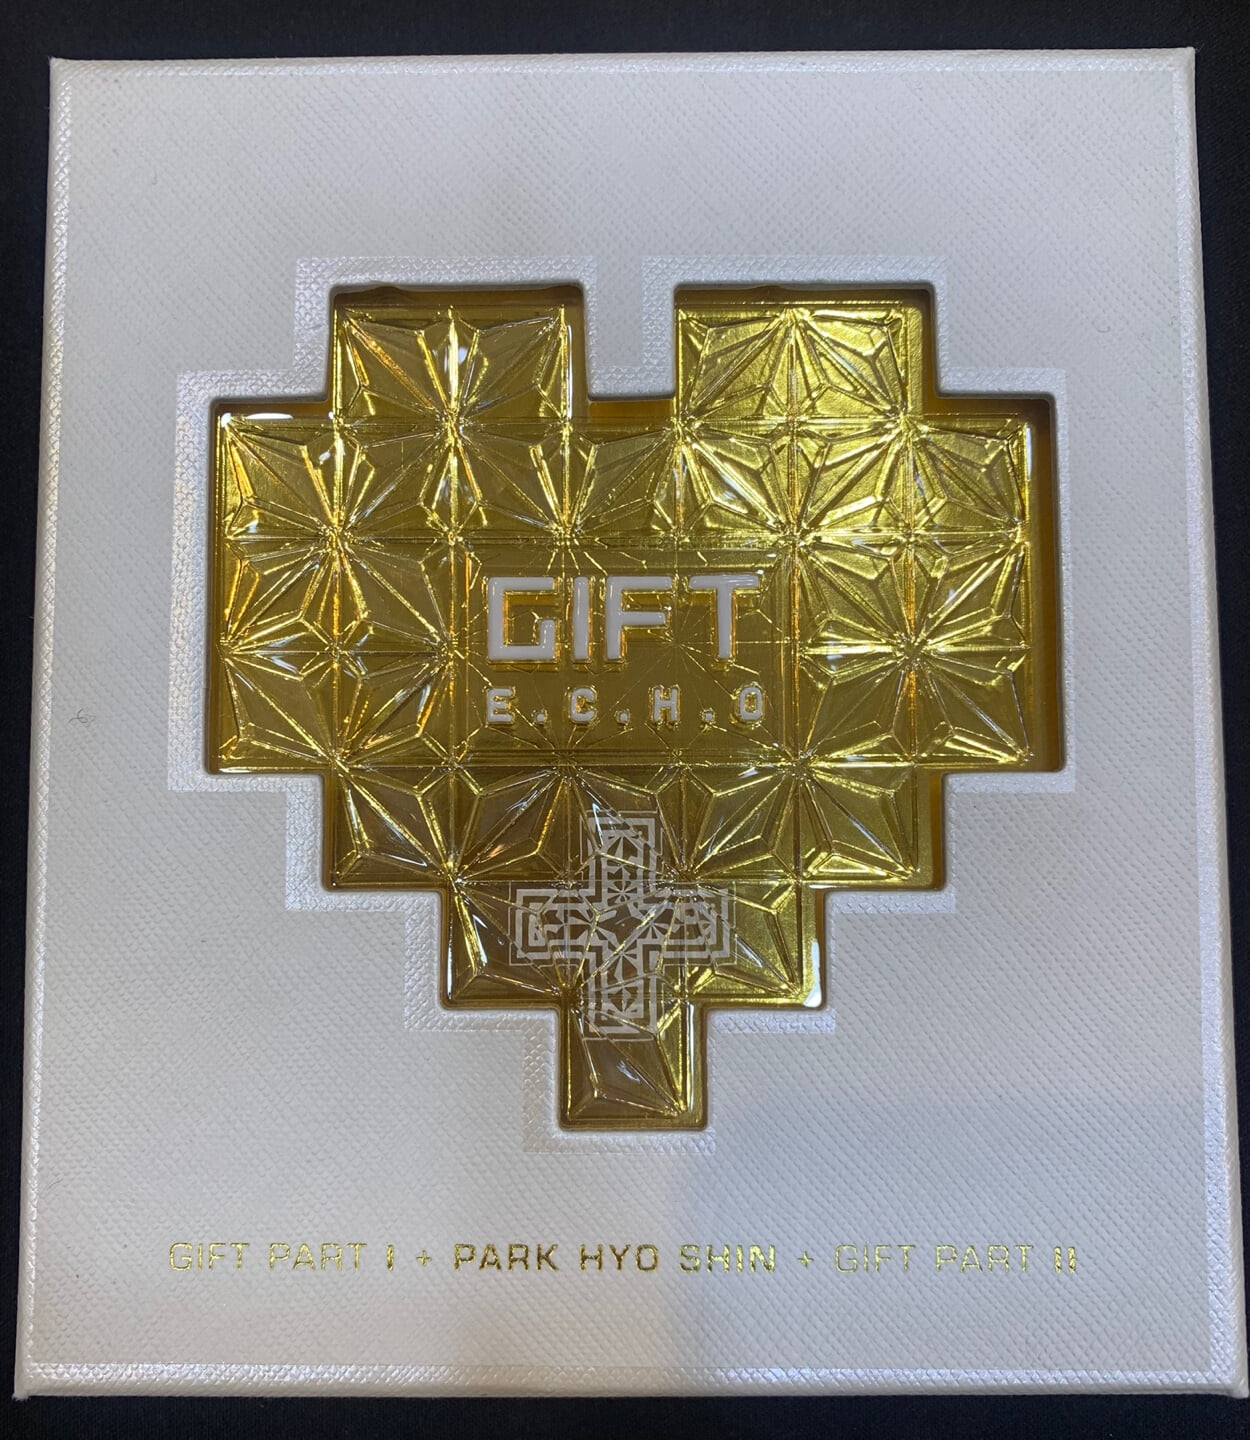 박효신 - 스페셜앨범 : [Gift] E.C.H.O 한정판앨범